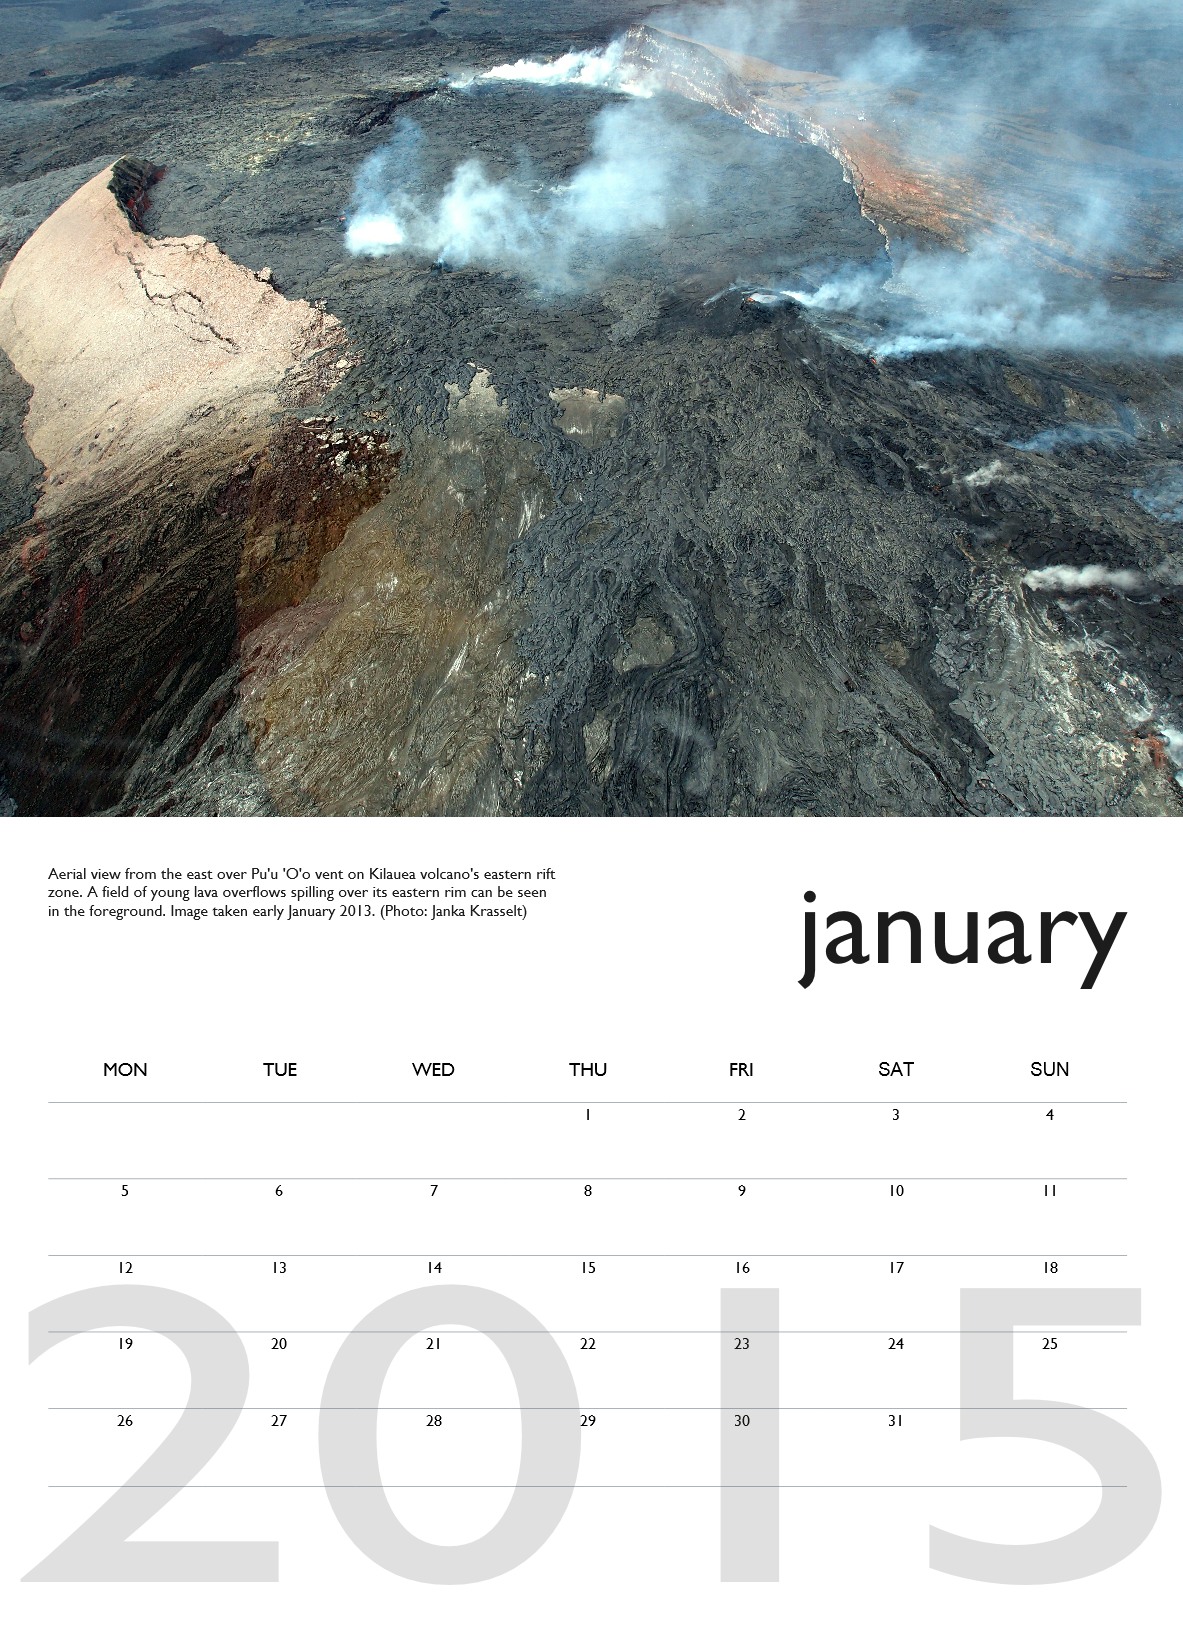 Volcano Calendar 2015 VolcanoDiscovery